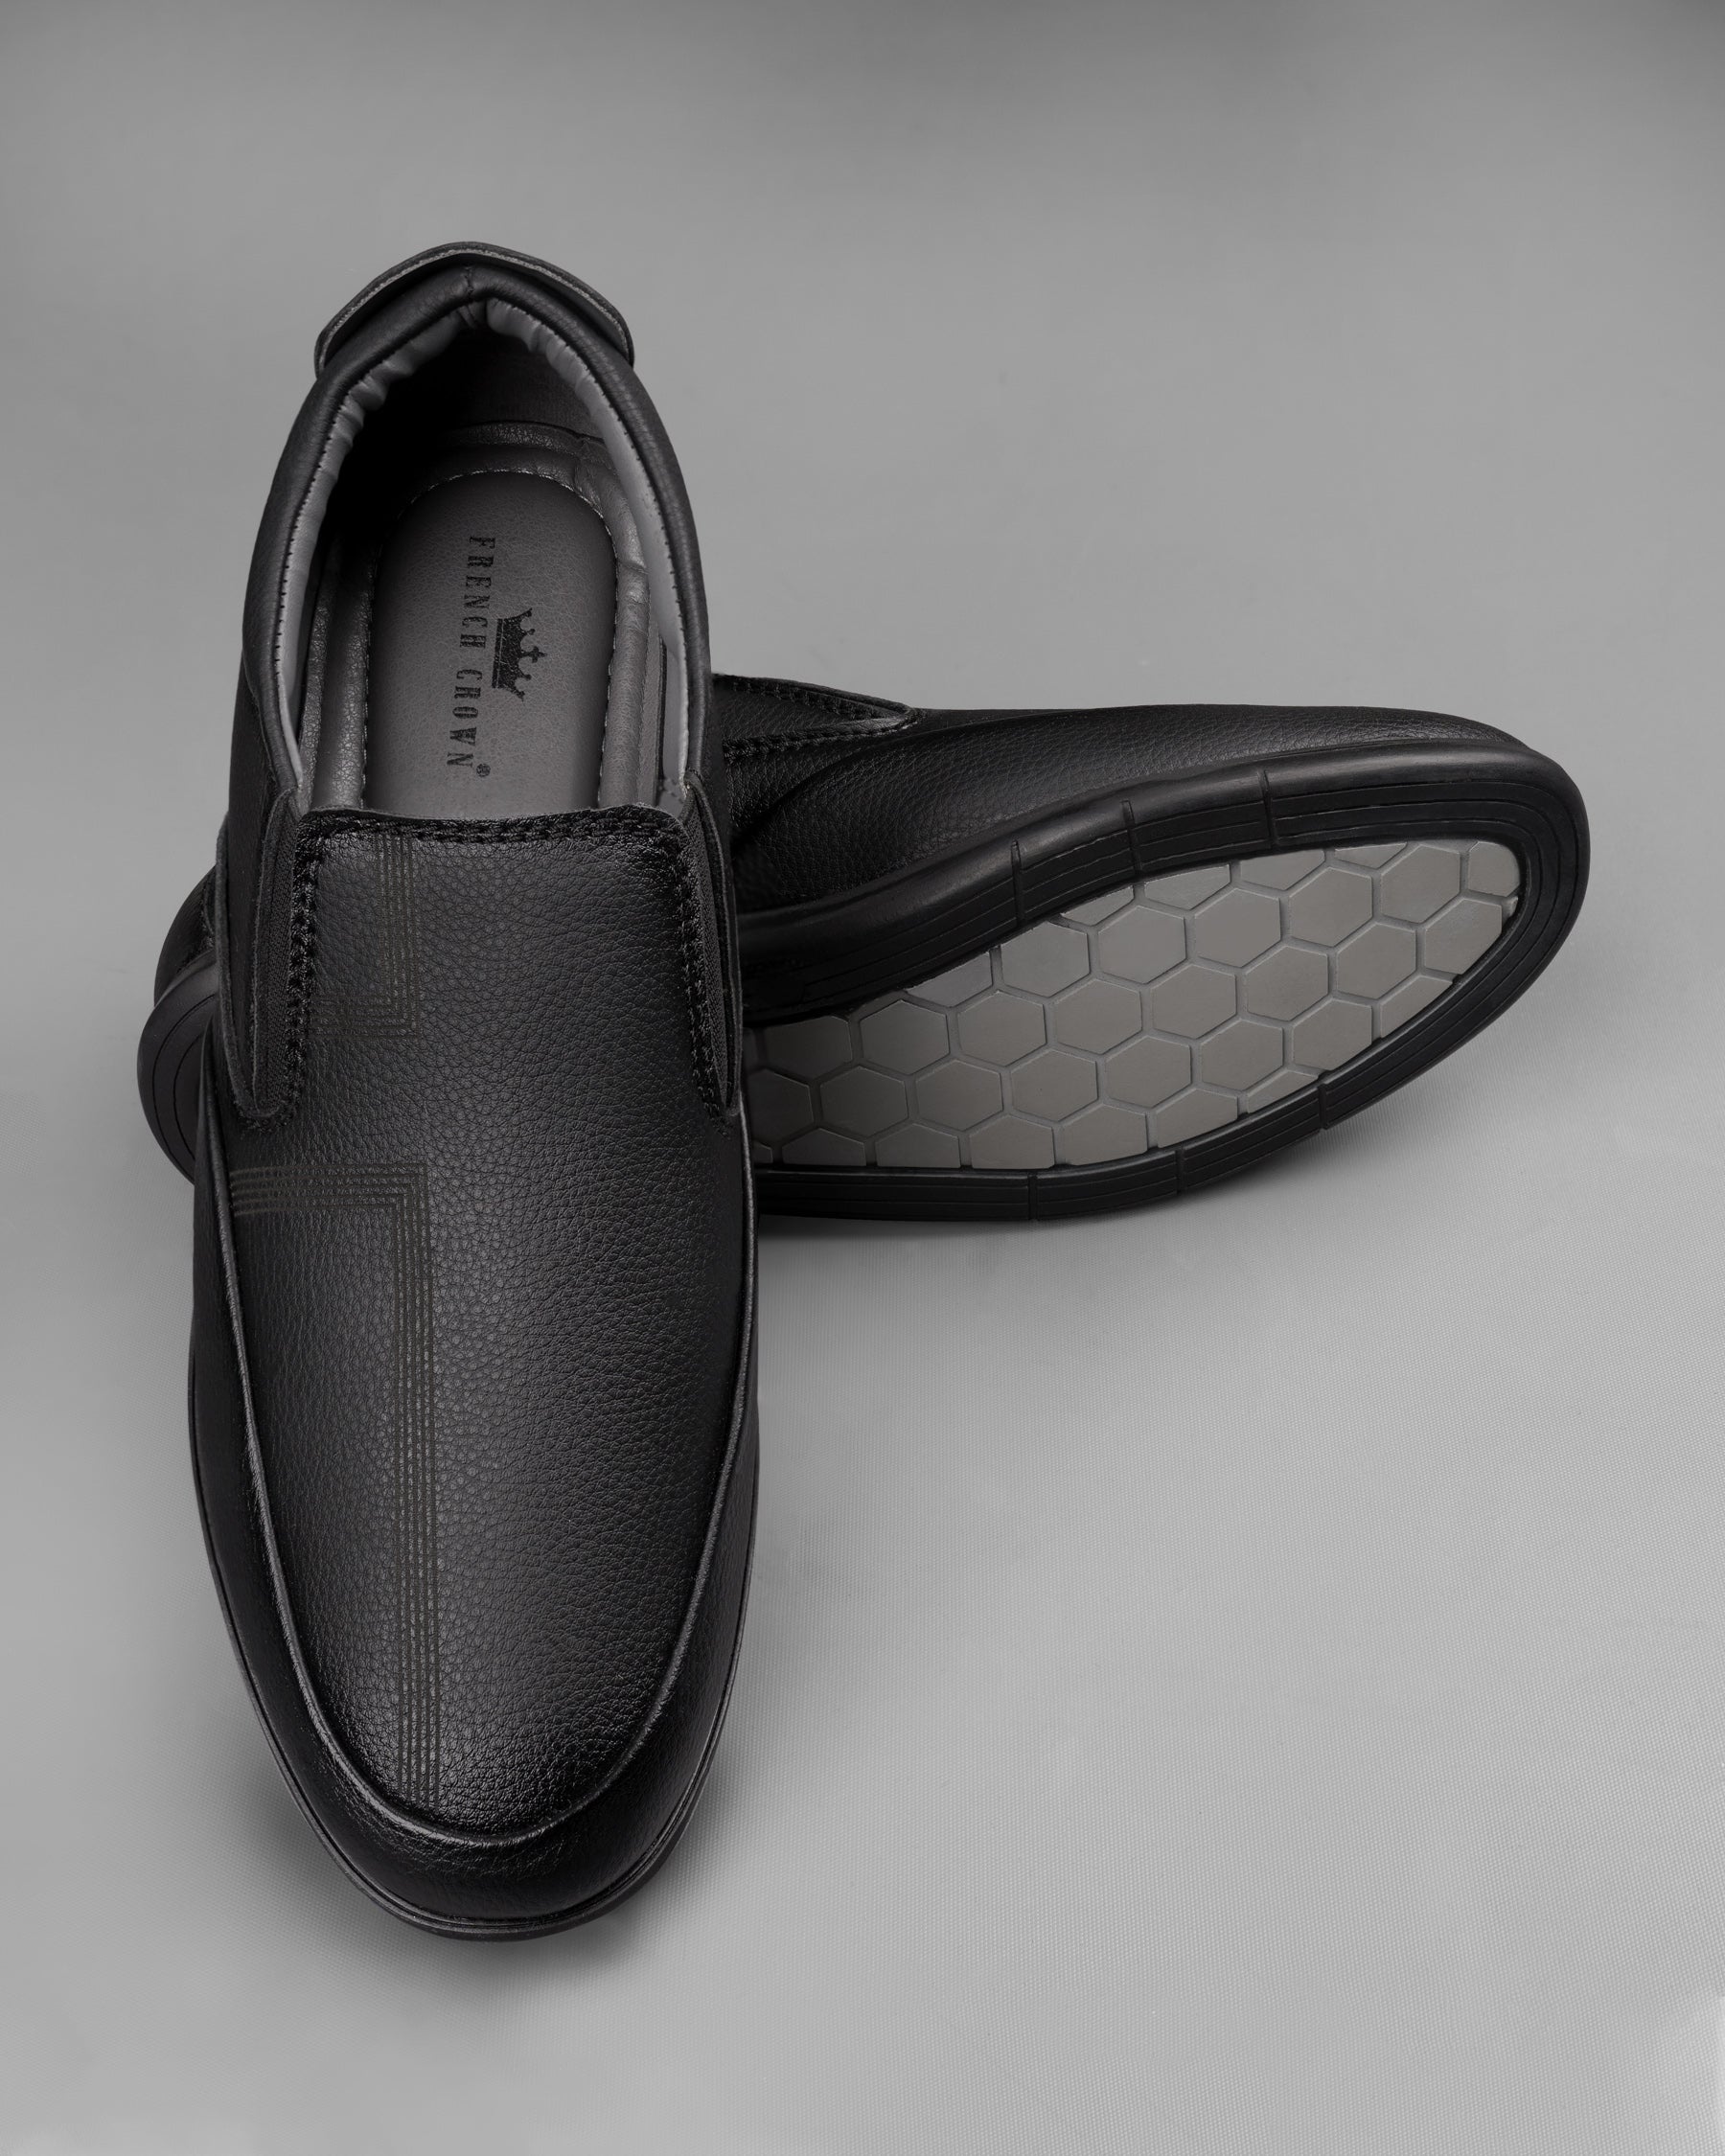 Jade Black 5 Stripe Patterned Slip-On Shoes FT011-6, FT011-7, FT011-8, FT011-9, FT011-10